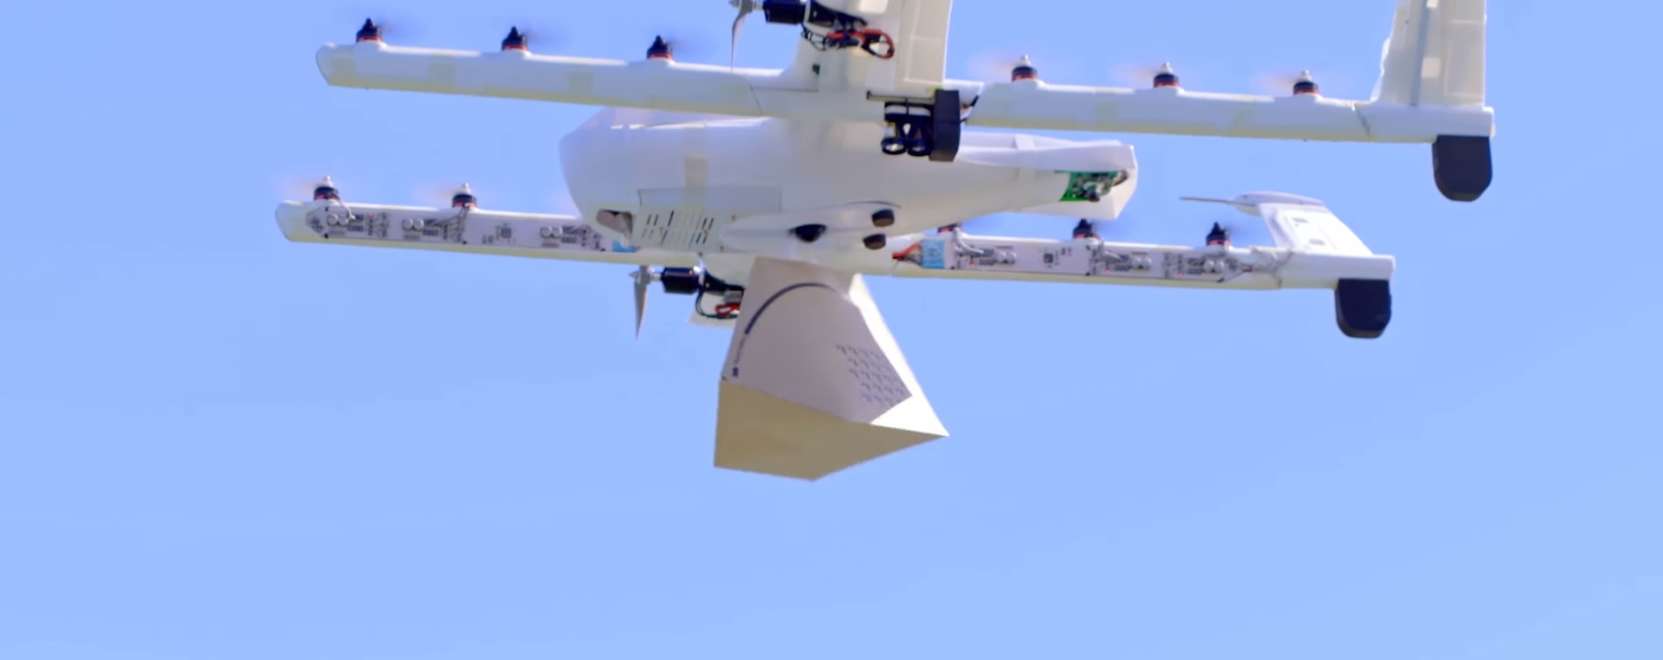 Ausztráliában teszteli a drónos csomagküldést a Google